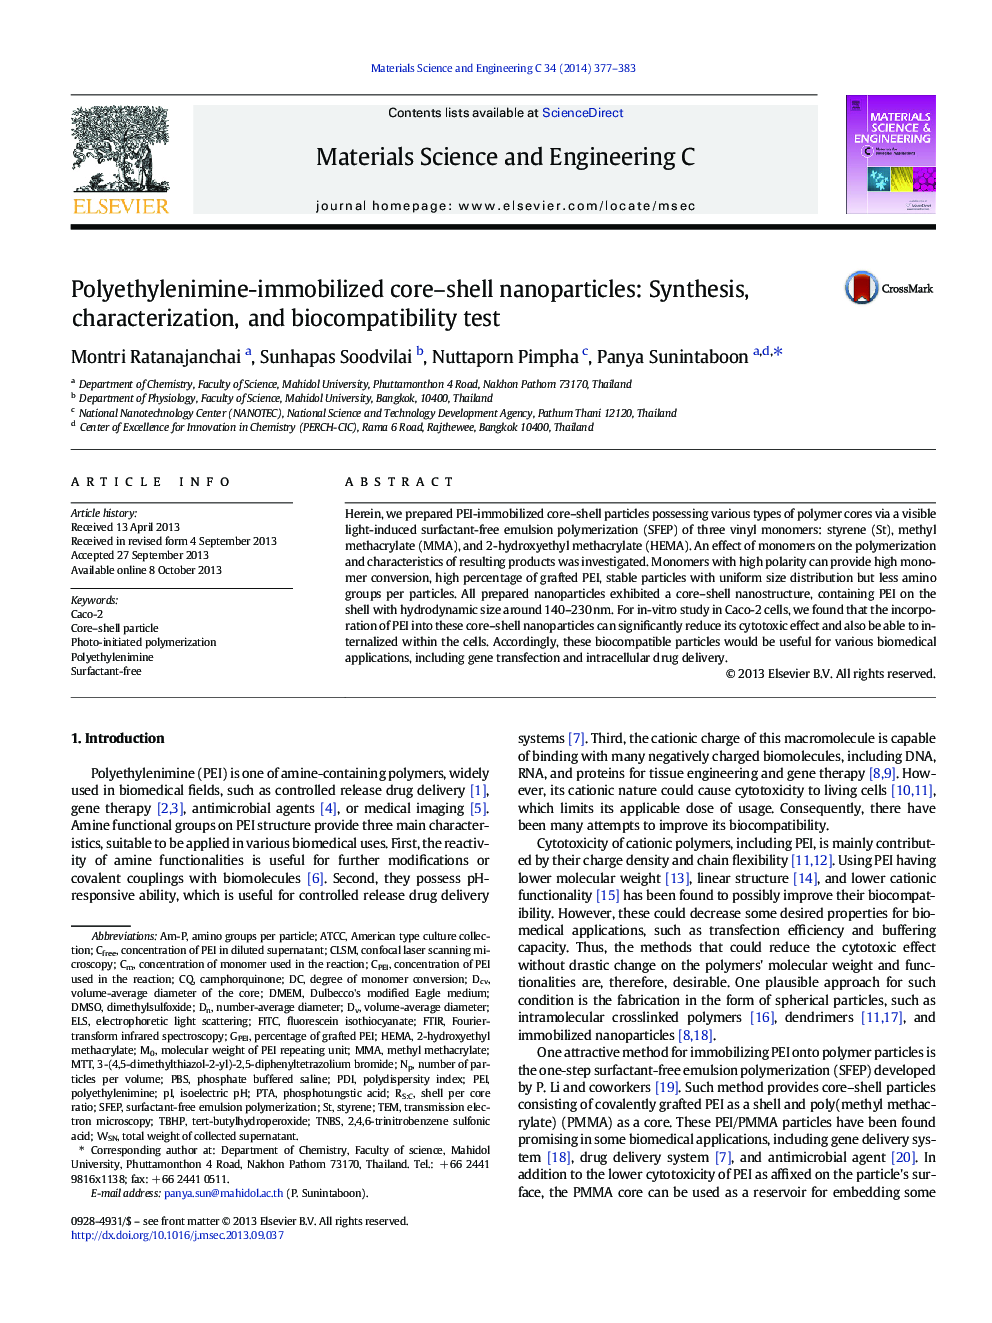 نانوذرات هسته-پوسته پلی اتیلنیمیم-امولسیون شده: سنتز، خصوصیات و آزمون سازگاری زیستی 